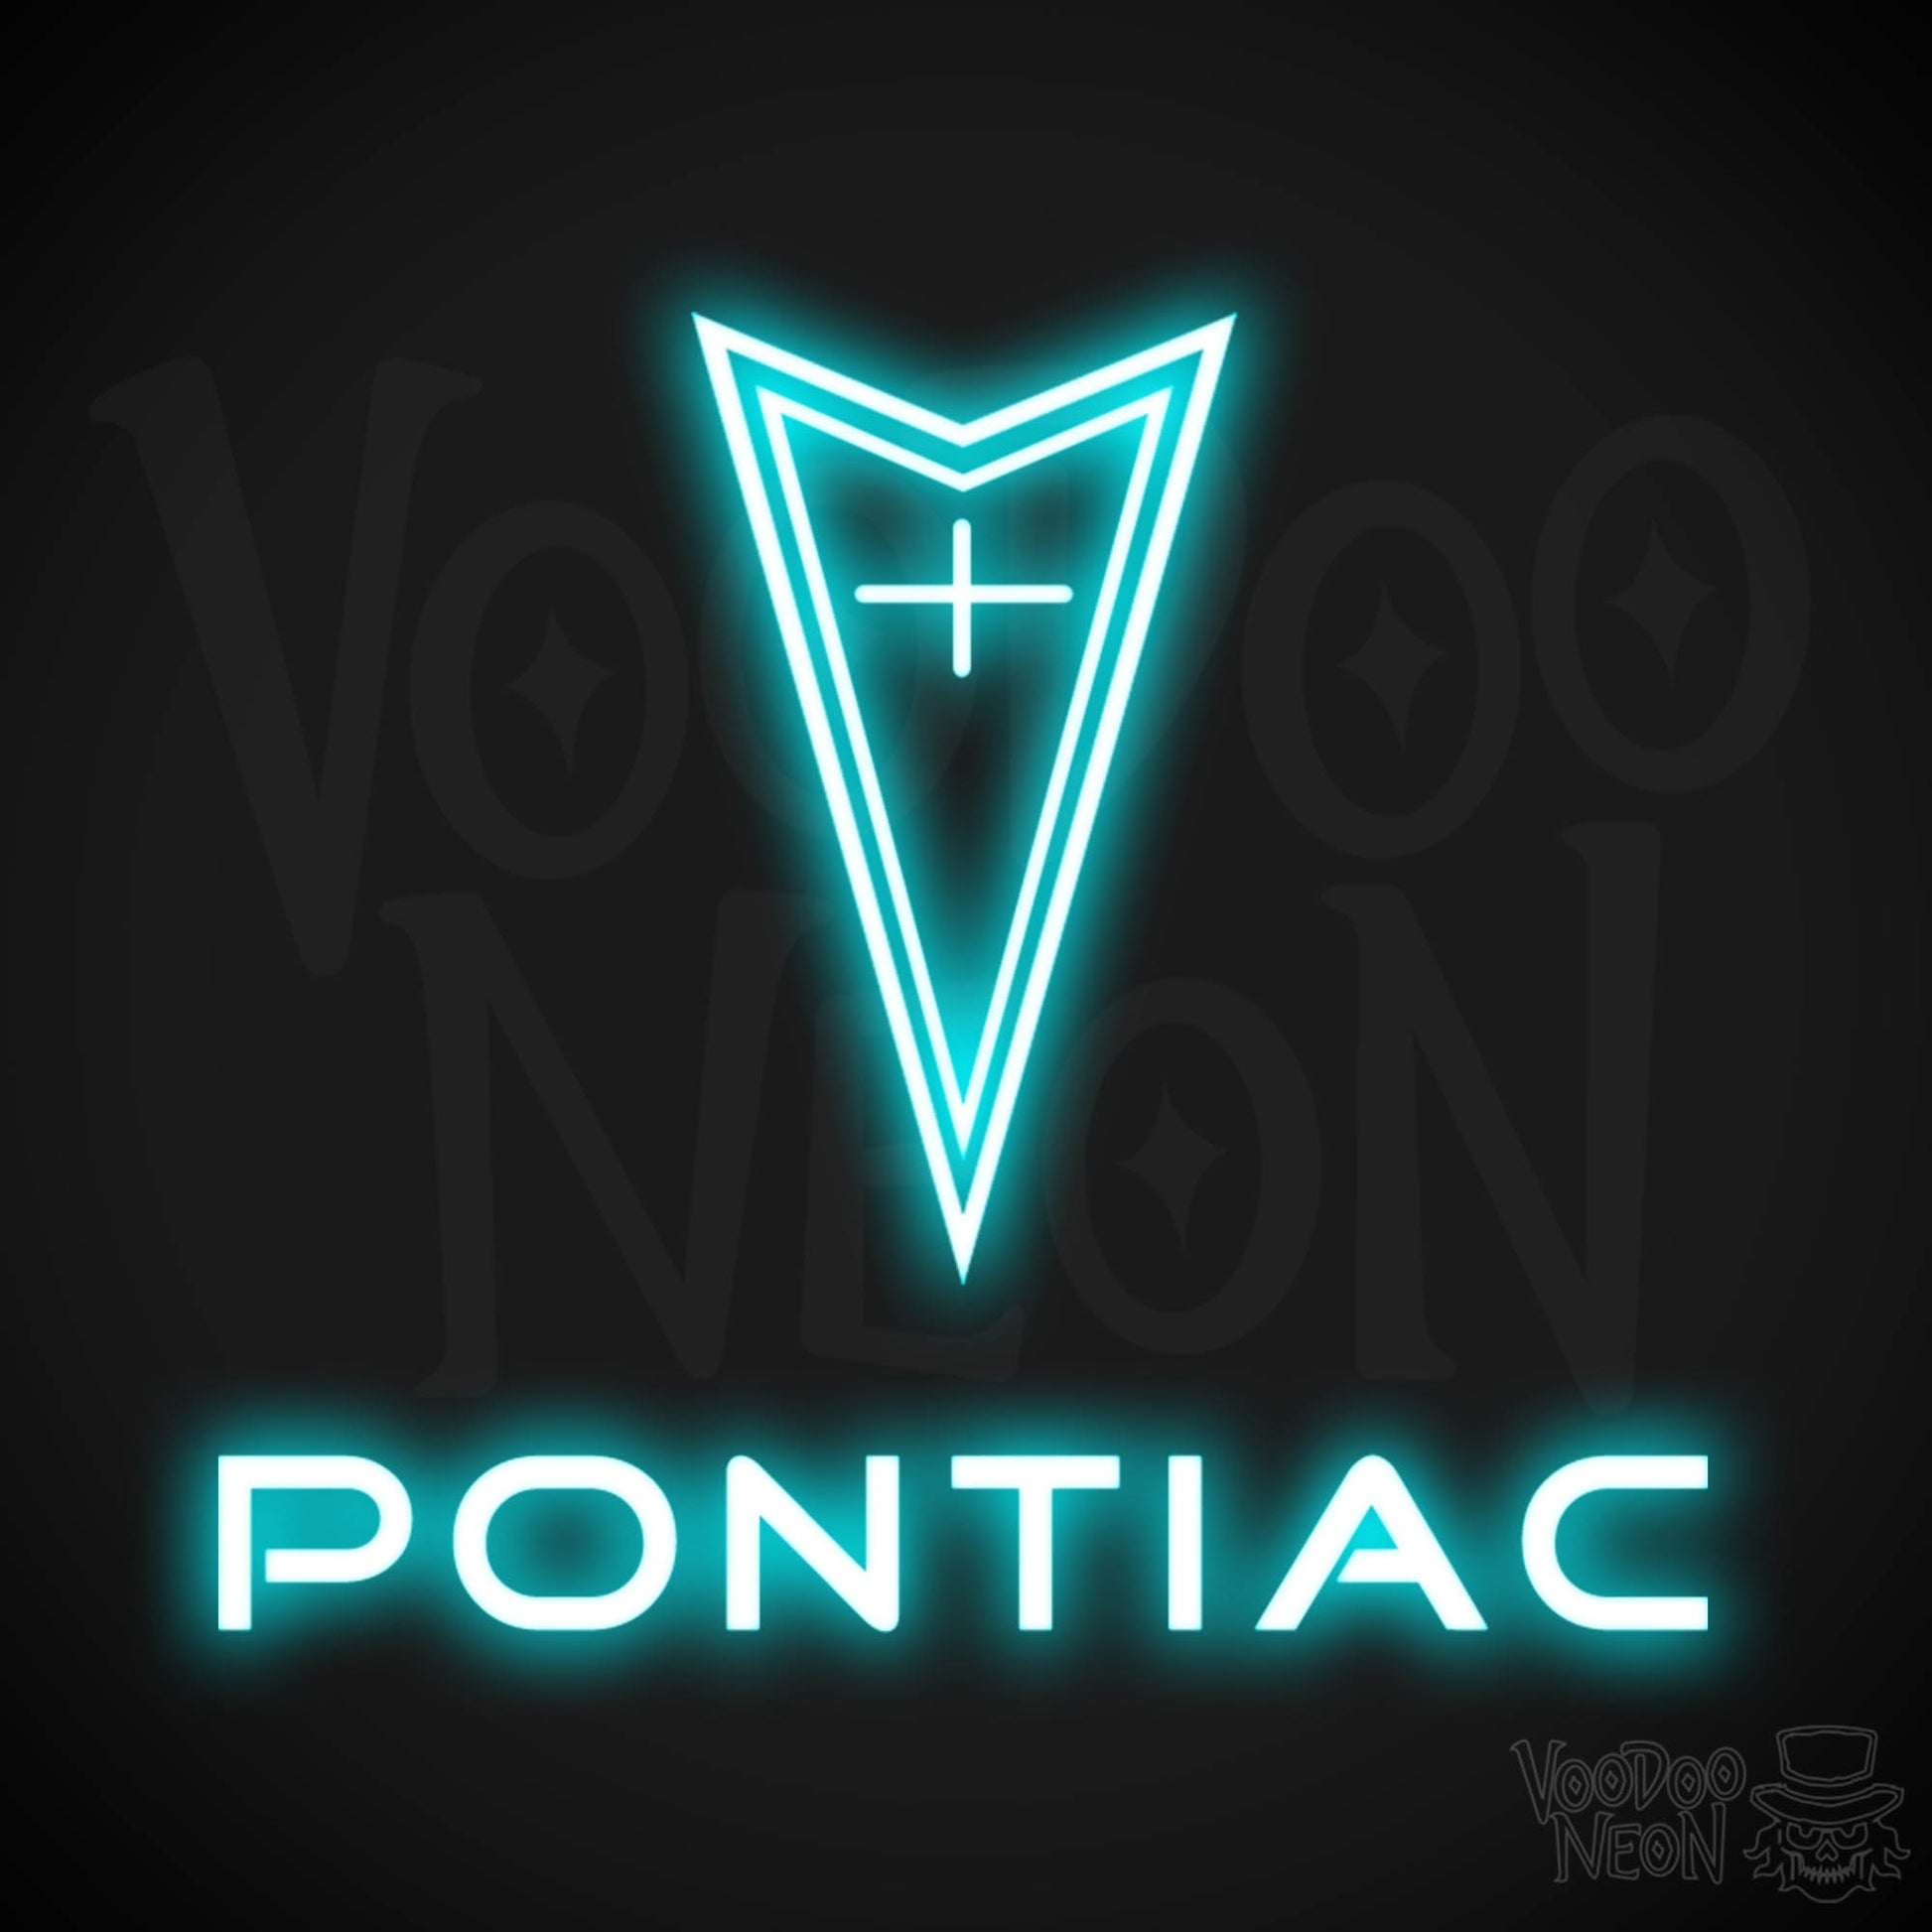 Pontiac Neon Sign - Pontiac Sign - Pontiac Decor - Wall Art - Color Ice Blue